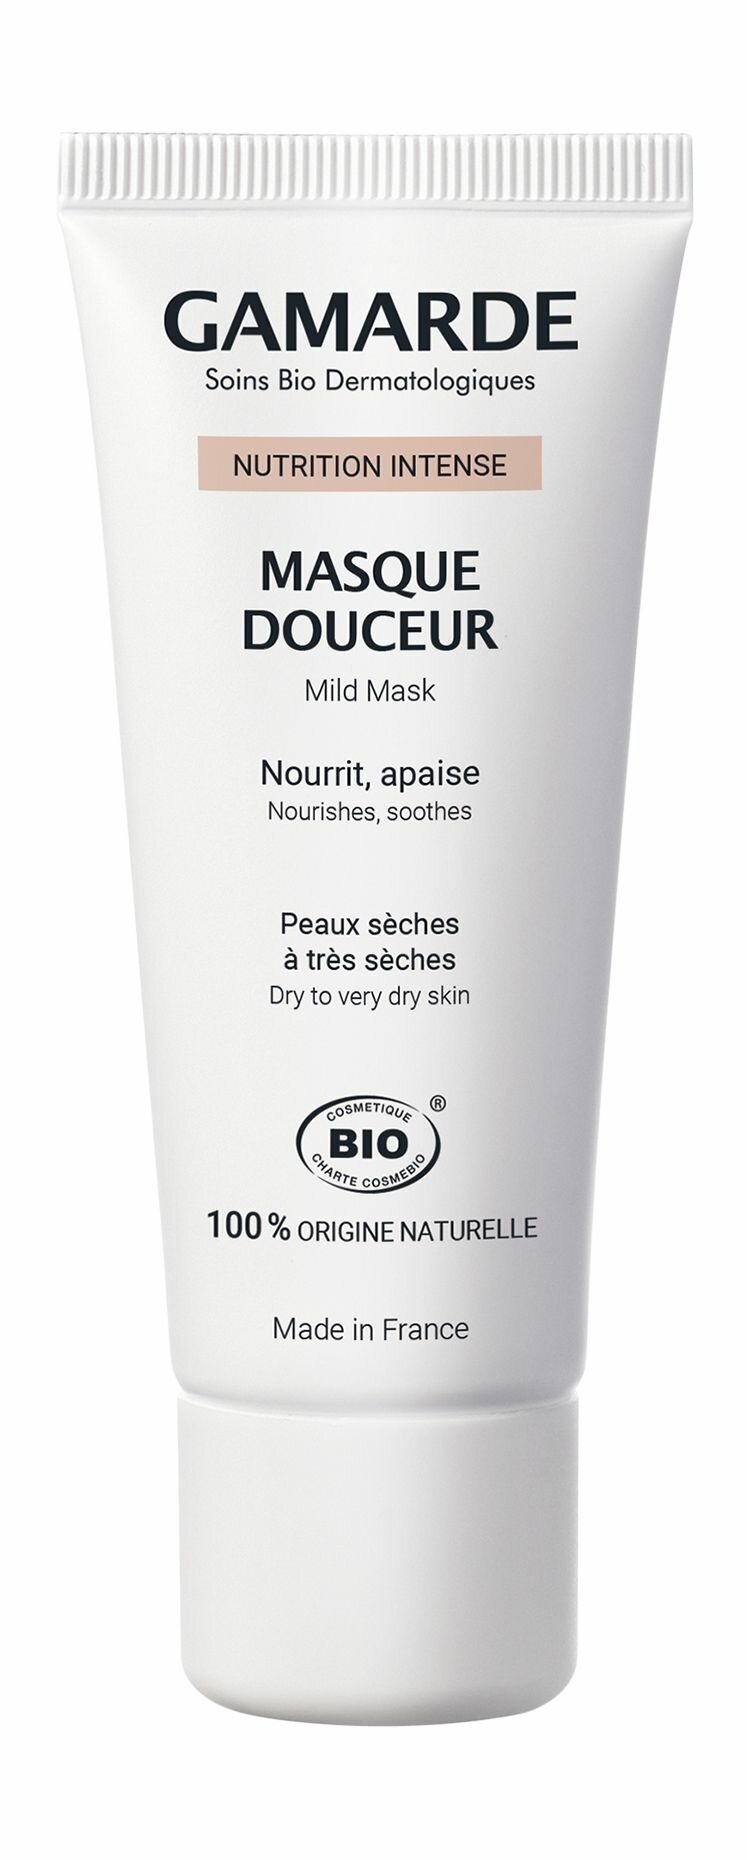 Питательная маска для лица с маслами и белой глиной / Gamarde Nutrition Intense Masque Douceur